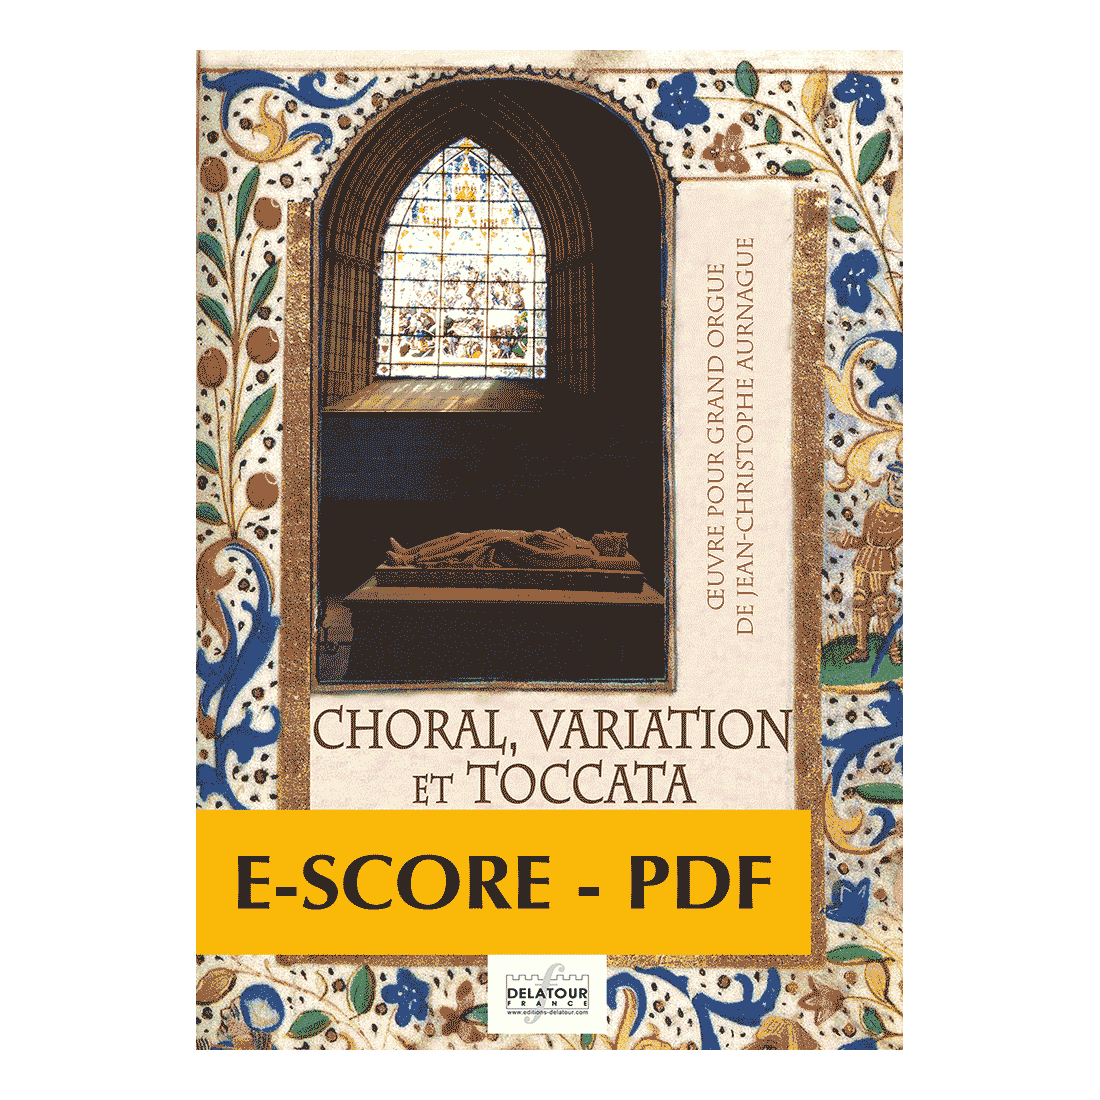 Choral, variation et toccata sur un cantique de la messe des morts for organ - E-score PDF